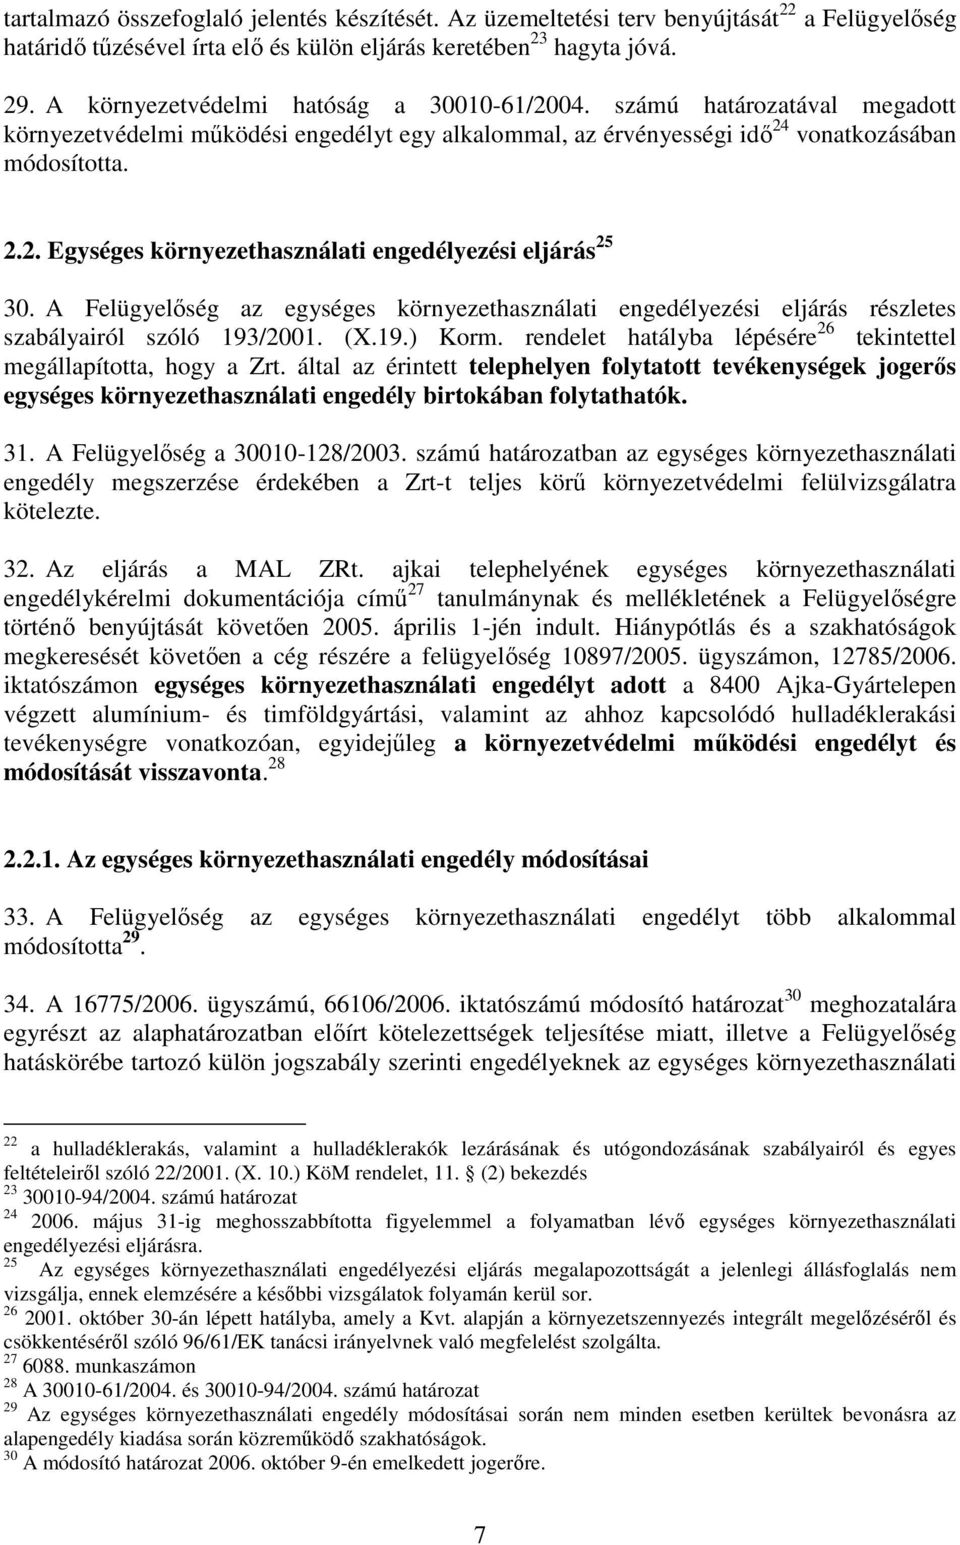 A Felügyelıség az egységes környezethasználati engedélyezési eljárás részletes szabályairól szóló 193/2001. (X.19.) Korm. rendelet hatályba lépésére 26 tekintettel megállapította, hogy a Zrt.